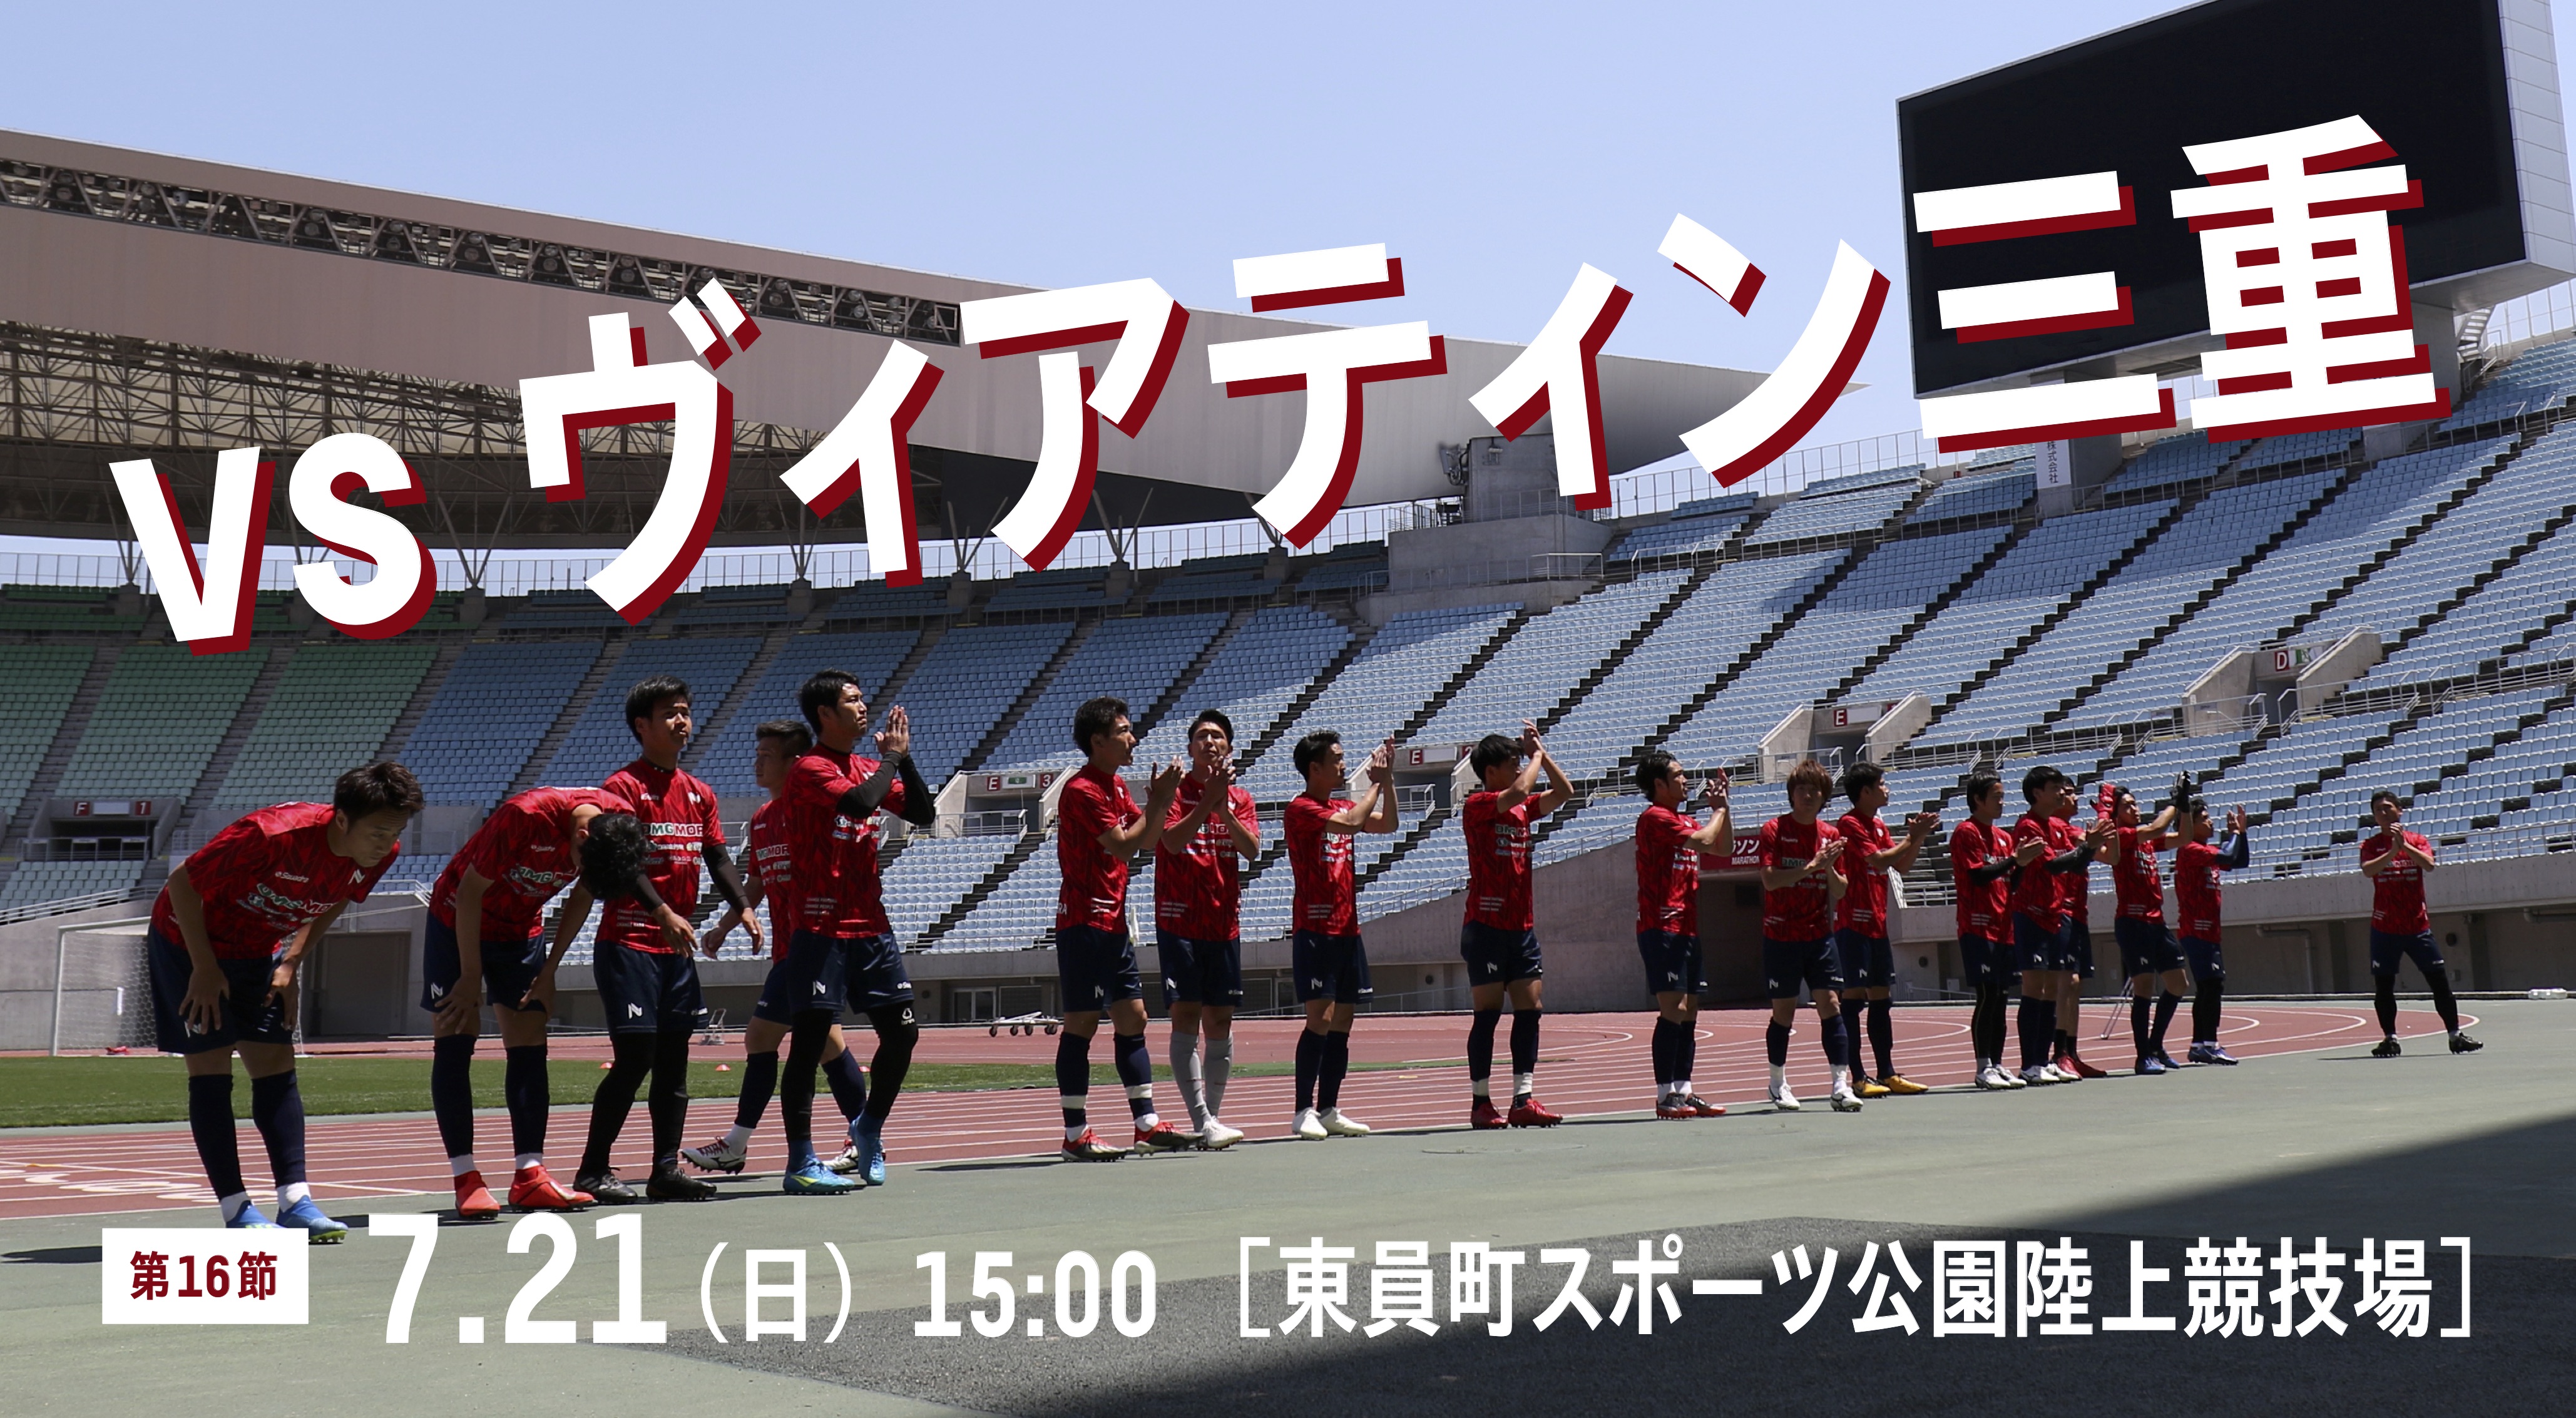 7 21 日 ヴィアティン三重戦 Away 試合情報 奈良クラブ Nara Club Official Site